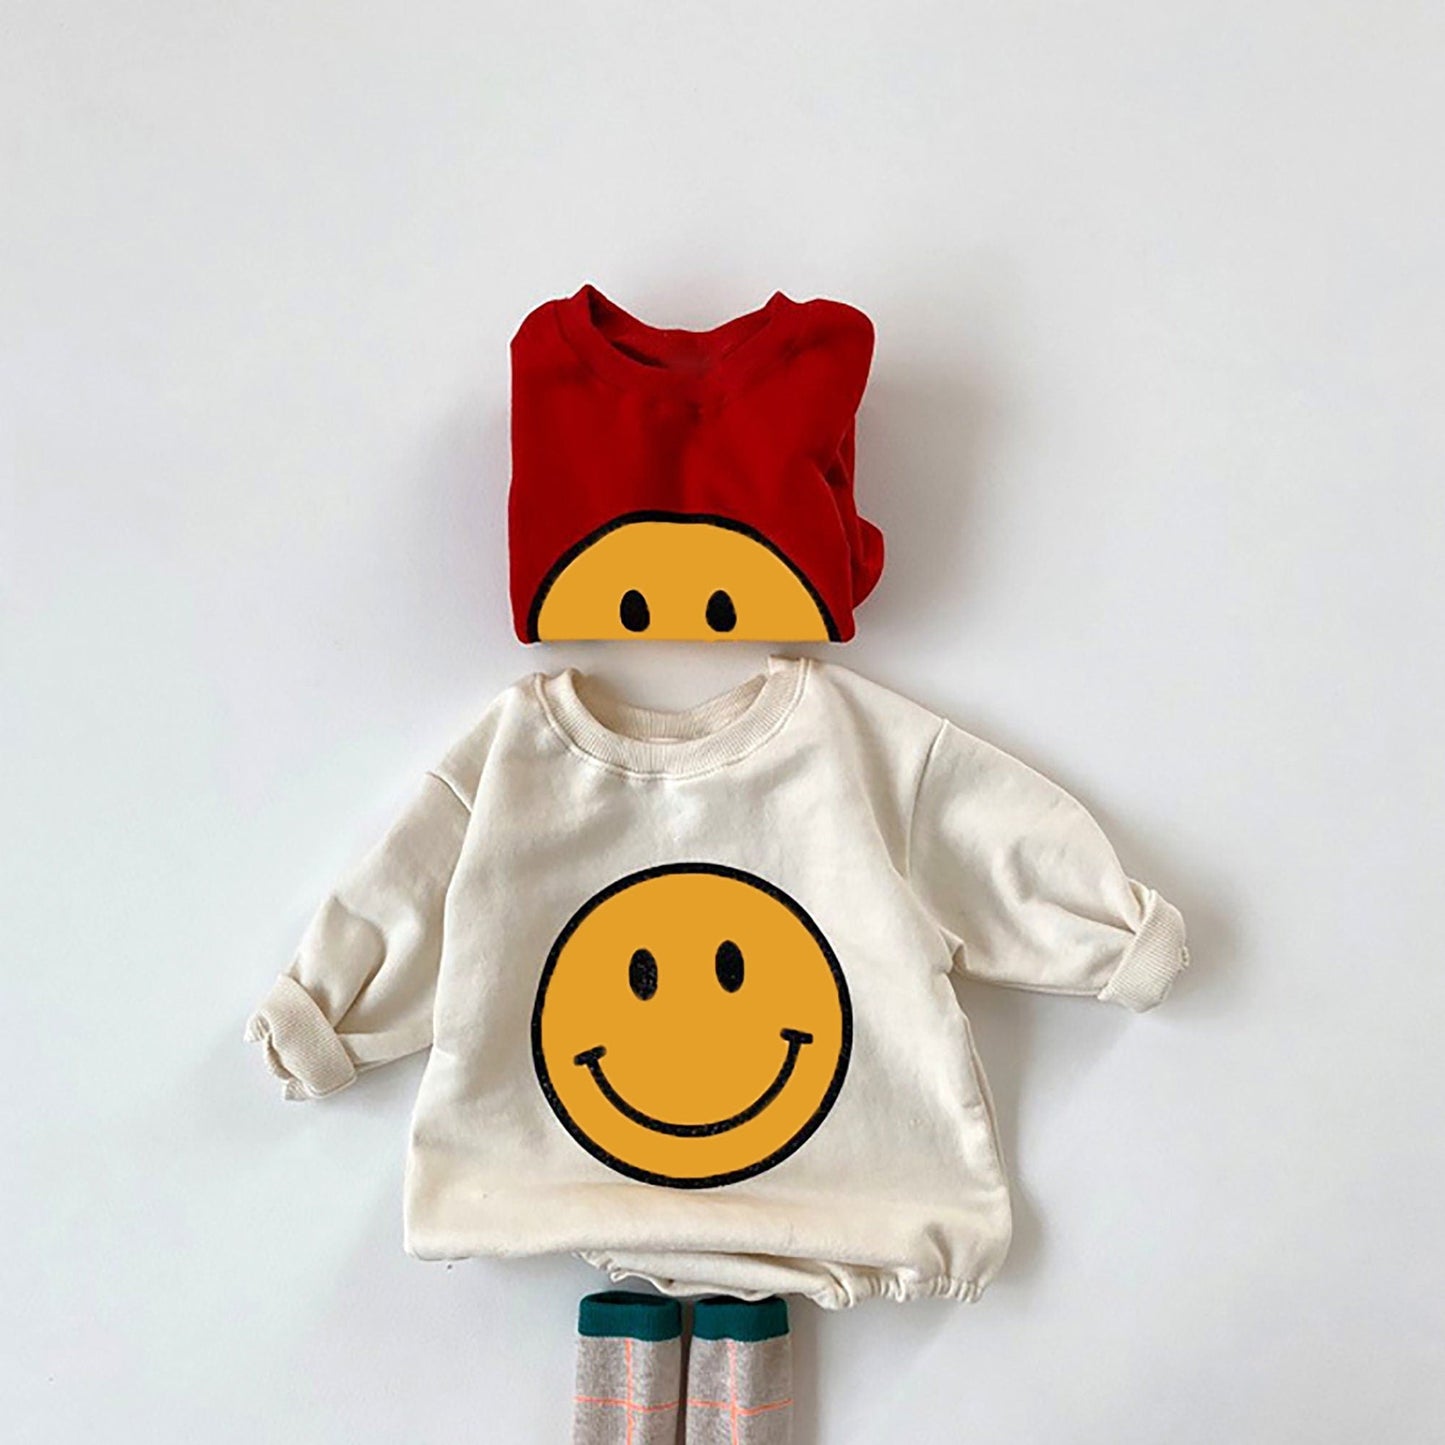 Smiley Face Sweatshirt- Beige